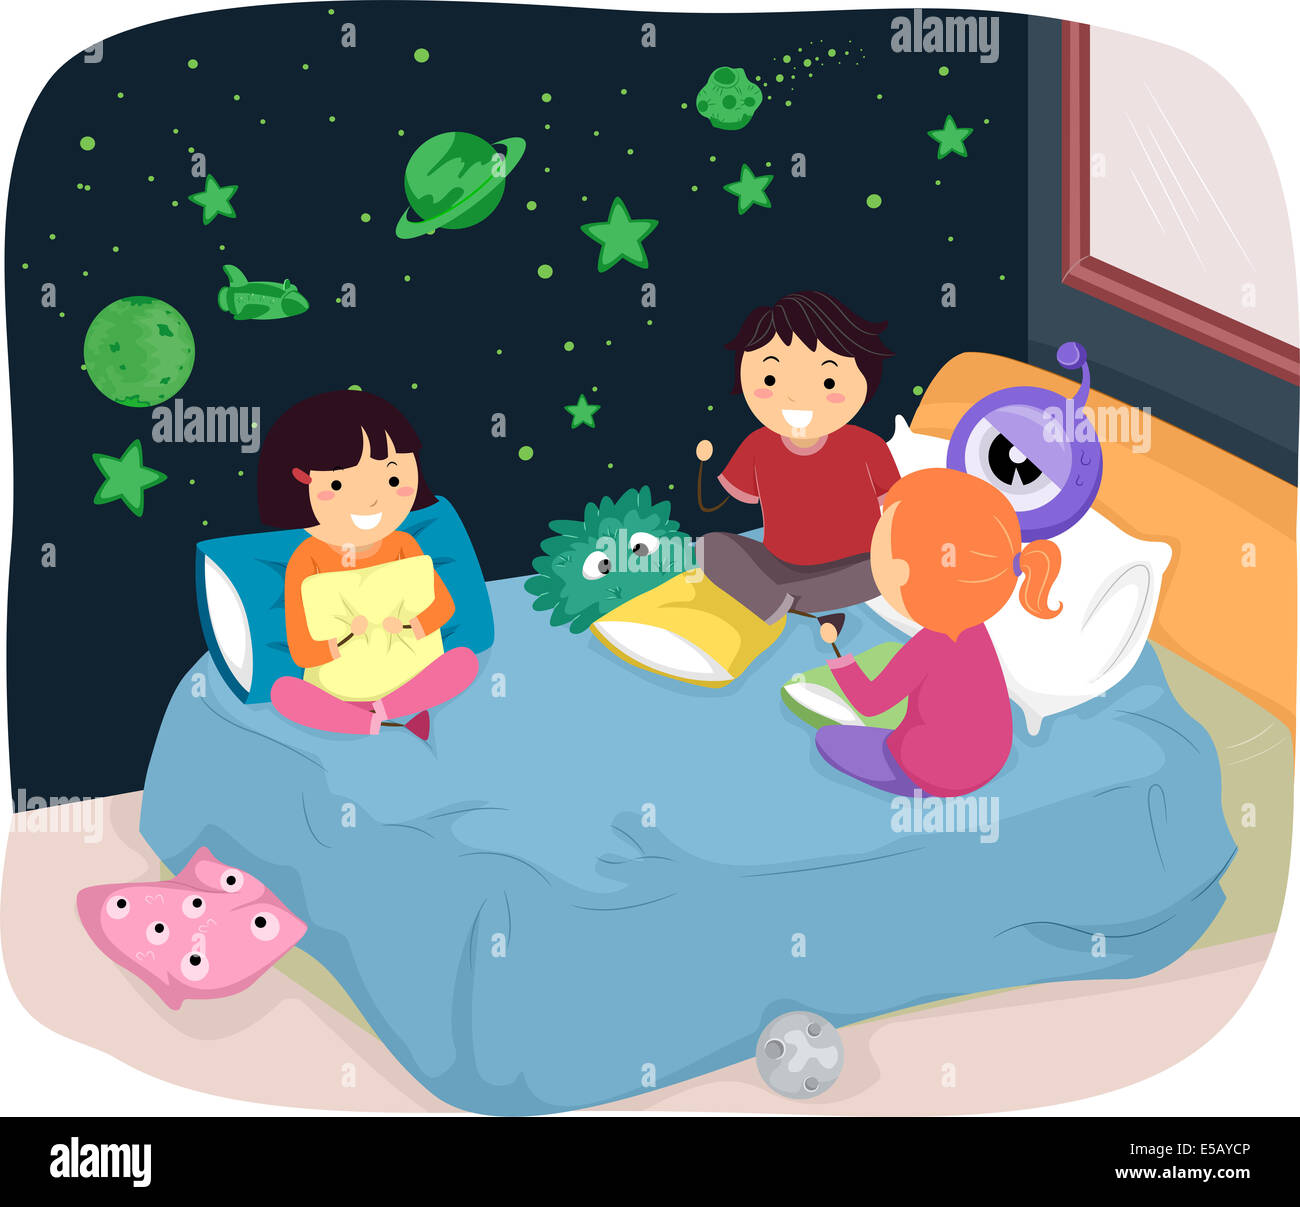 Ilustración de los niños en una habitación con pegatinas que brilla en la oscuridad Foto de stock